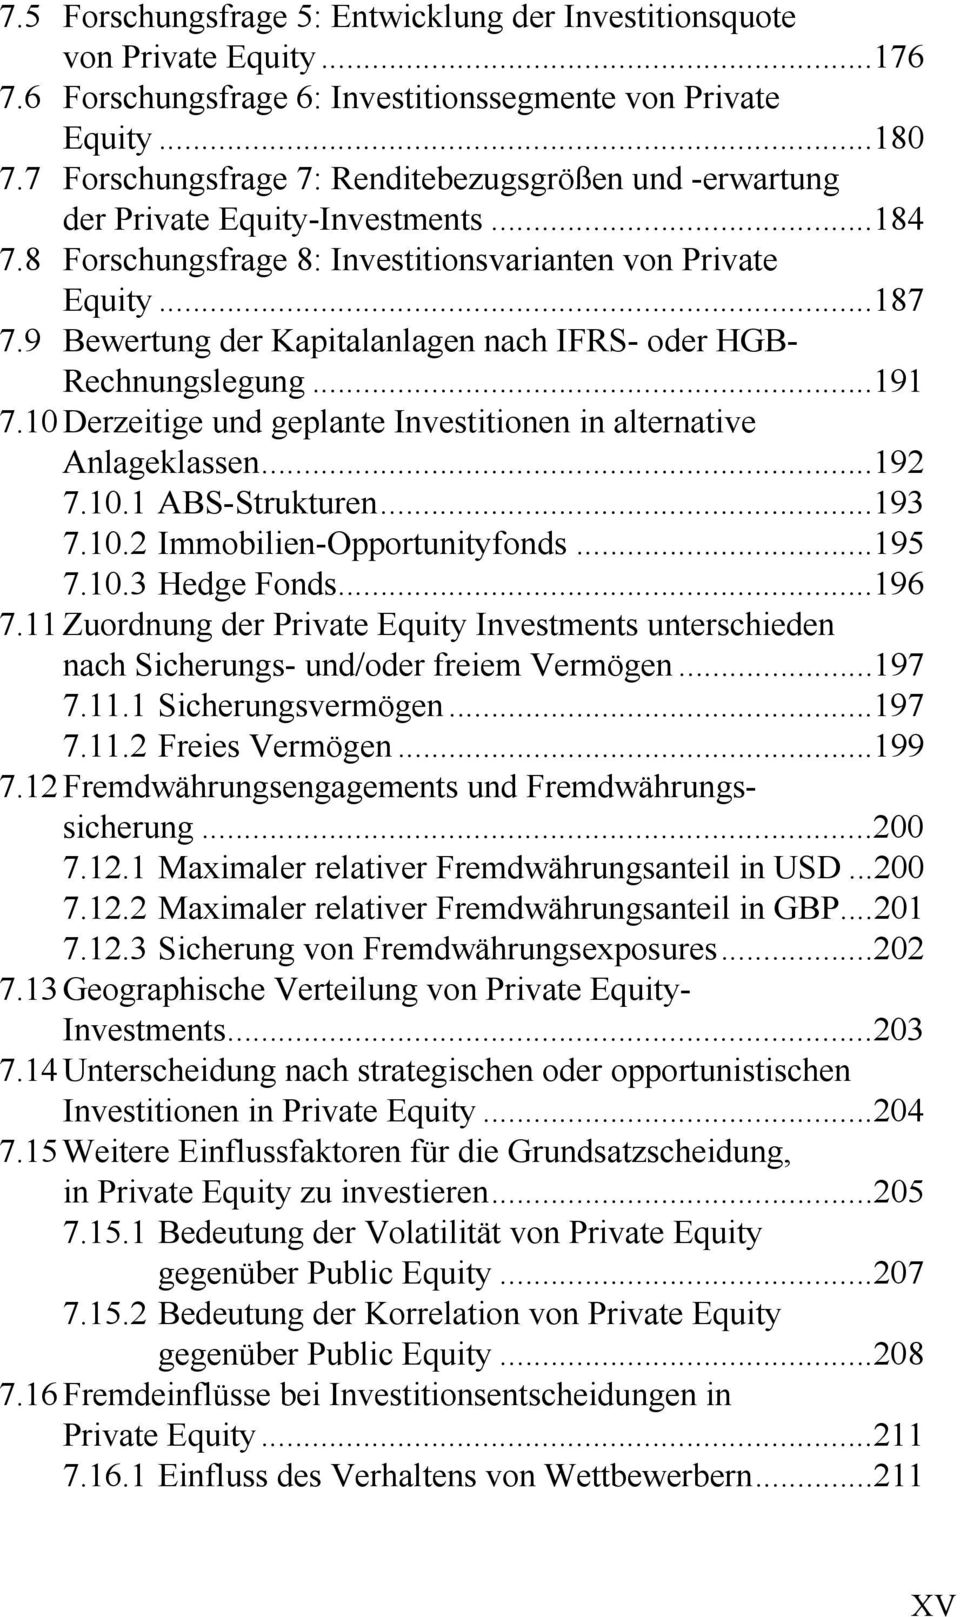 9 Bewertung der Kapitalanlagen nach IFRS- oder HGB- Rechnungslegung...191 7.10 Derzeitige und geplante Investitionen in alternative Anlageklassen...192 7.10.1 ABS-Strukturen...193 7.10.2 Immobilien-Opportunityfonds.